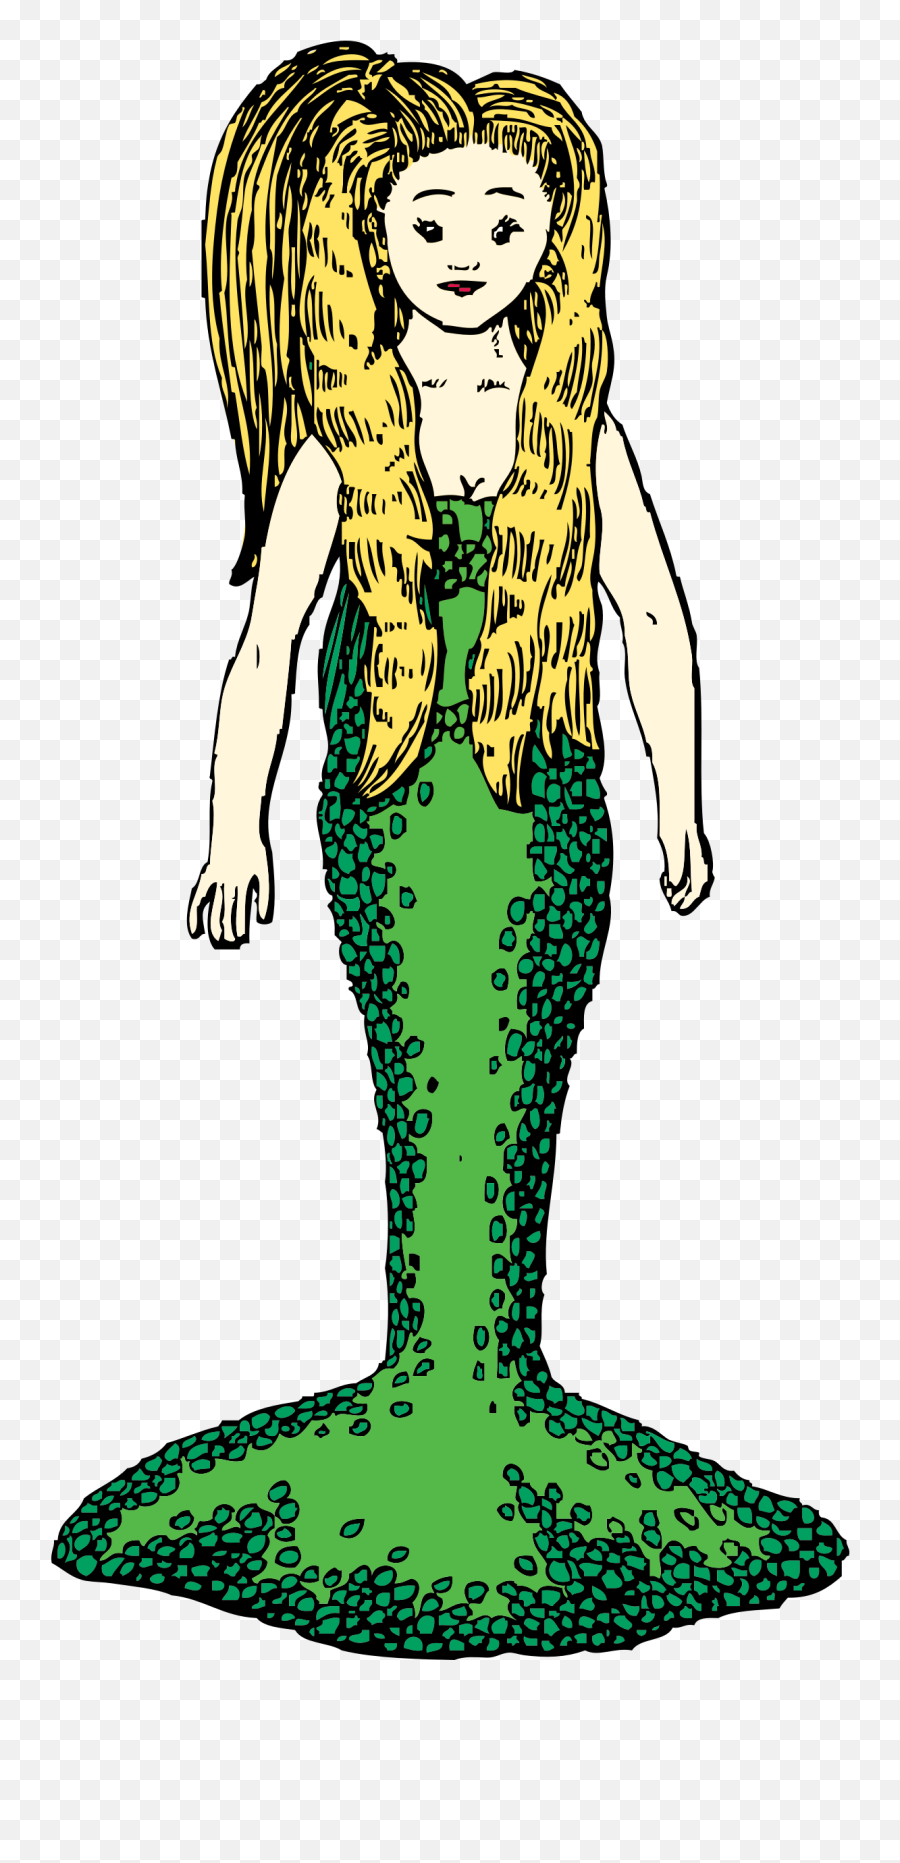 Download This Free Icons Png Design Of Mermaid With Blonde - Mermaids Blonde Hair Art,Free Mermaid Png